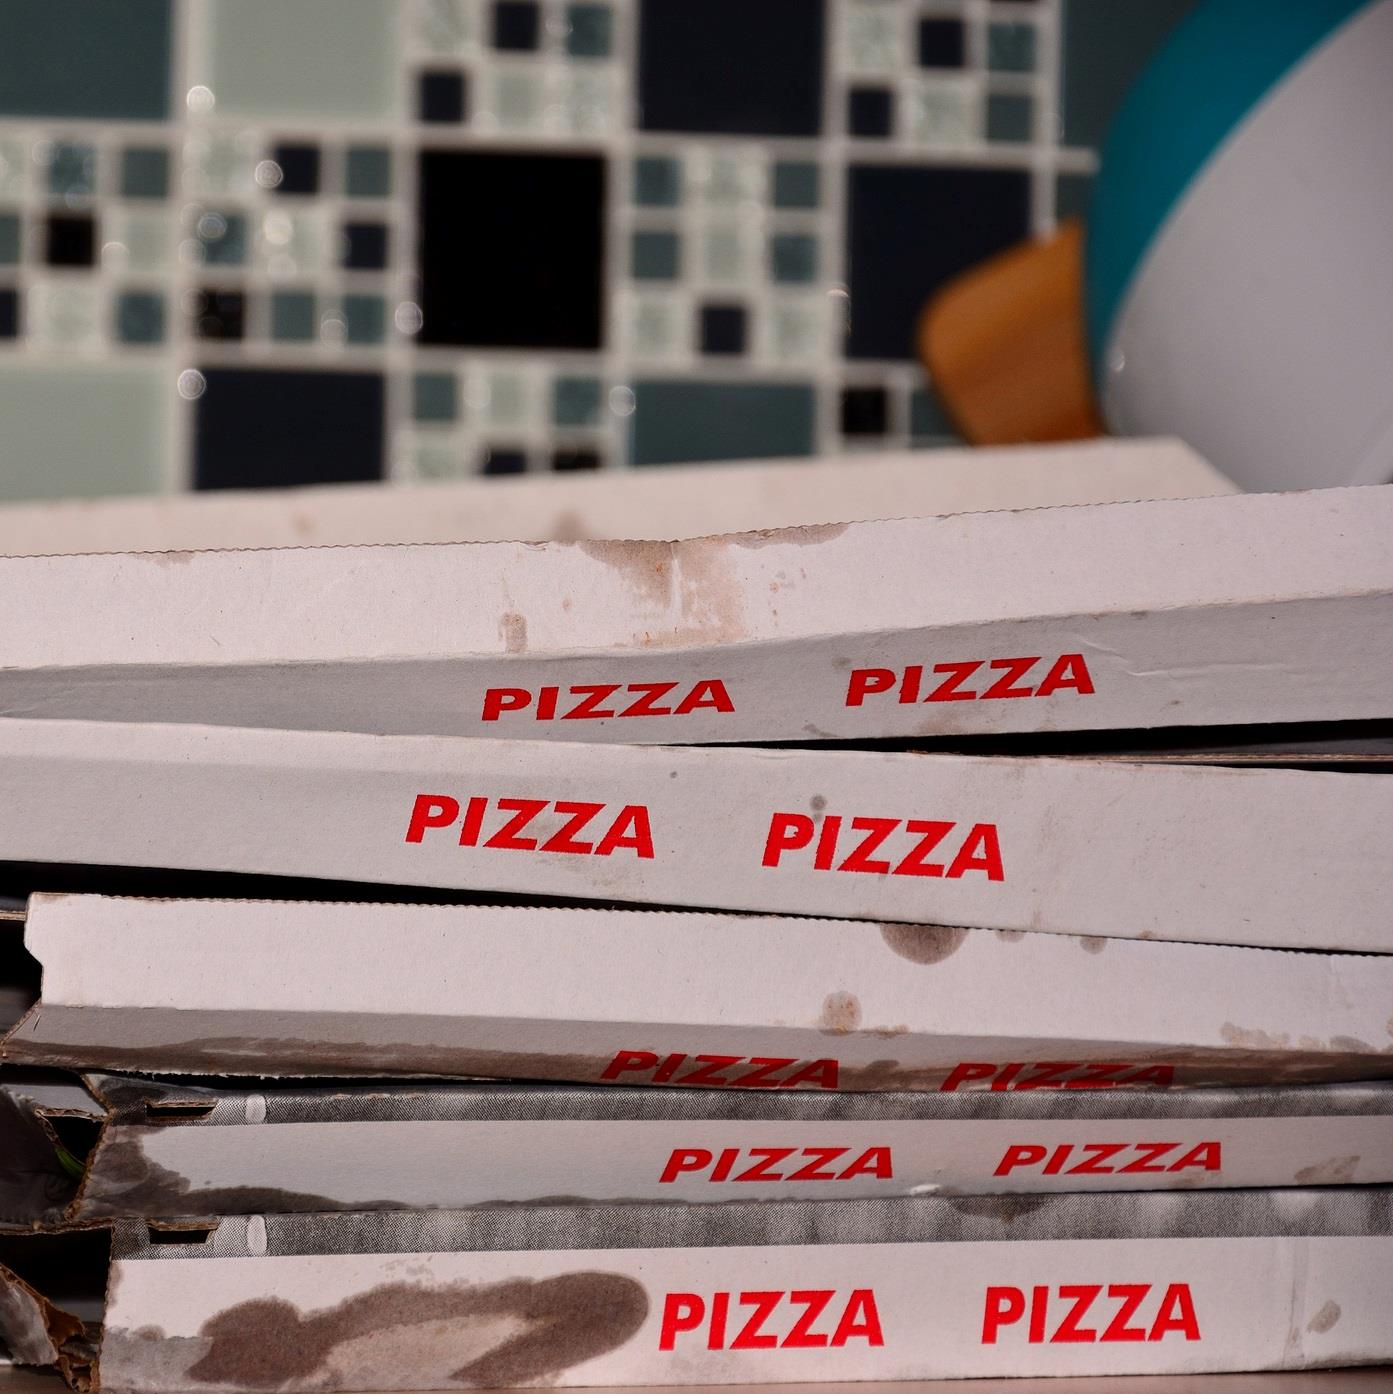 Fem snaskede pizzabakker ligger ovenpå hinanden